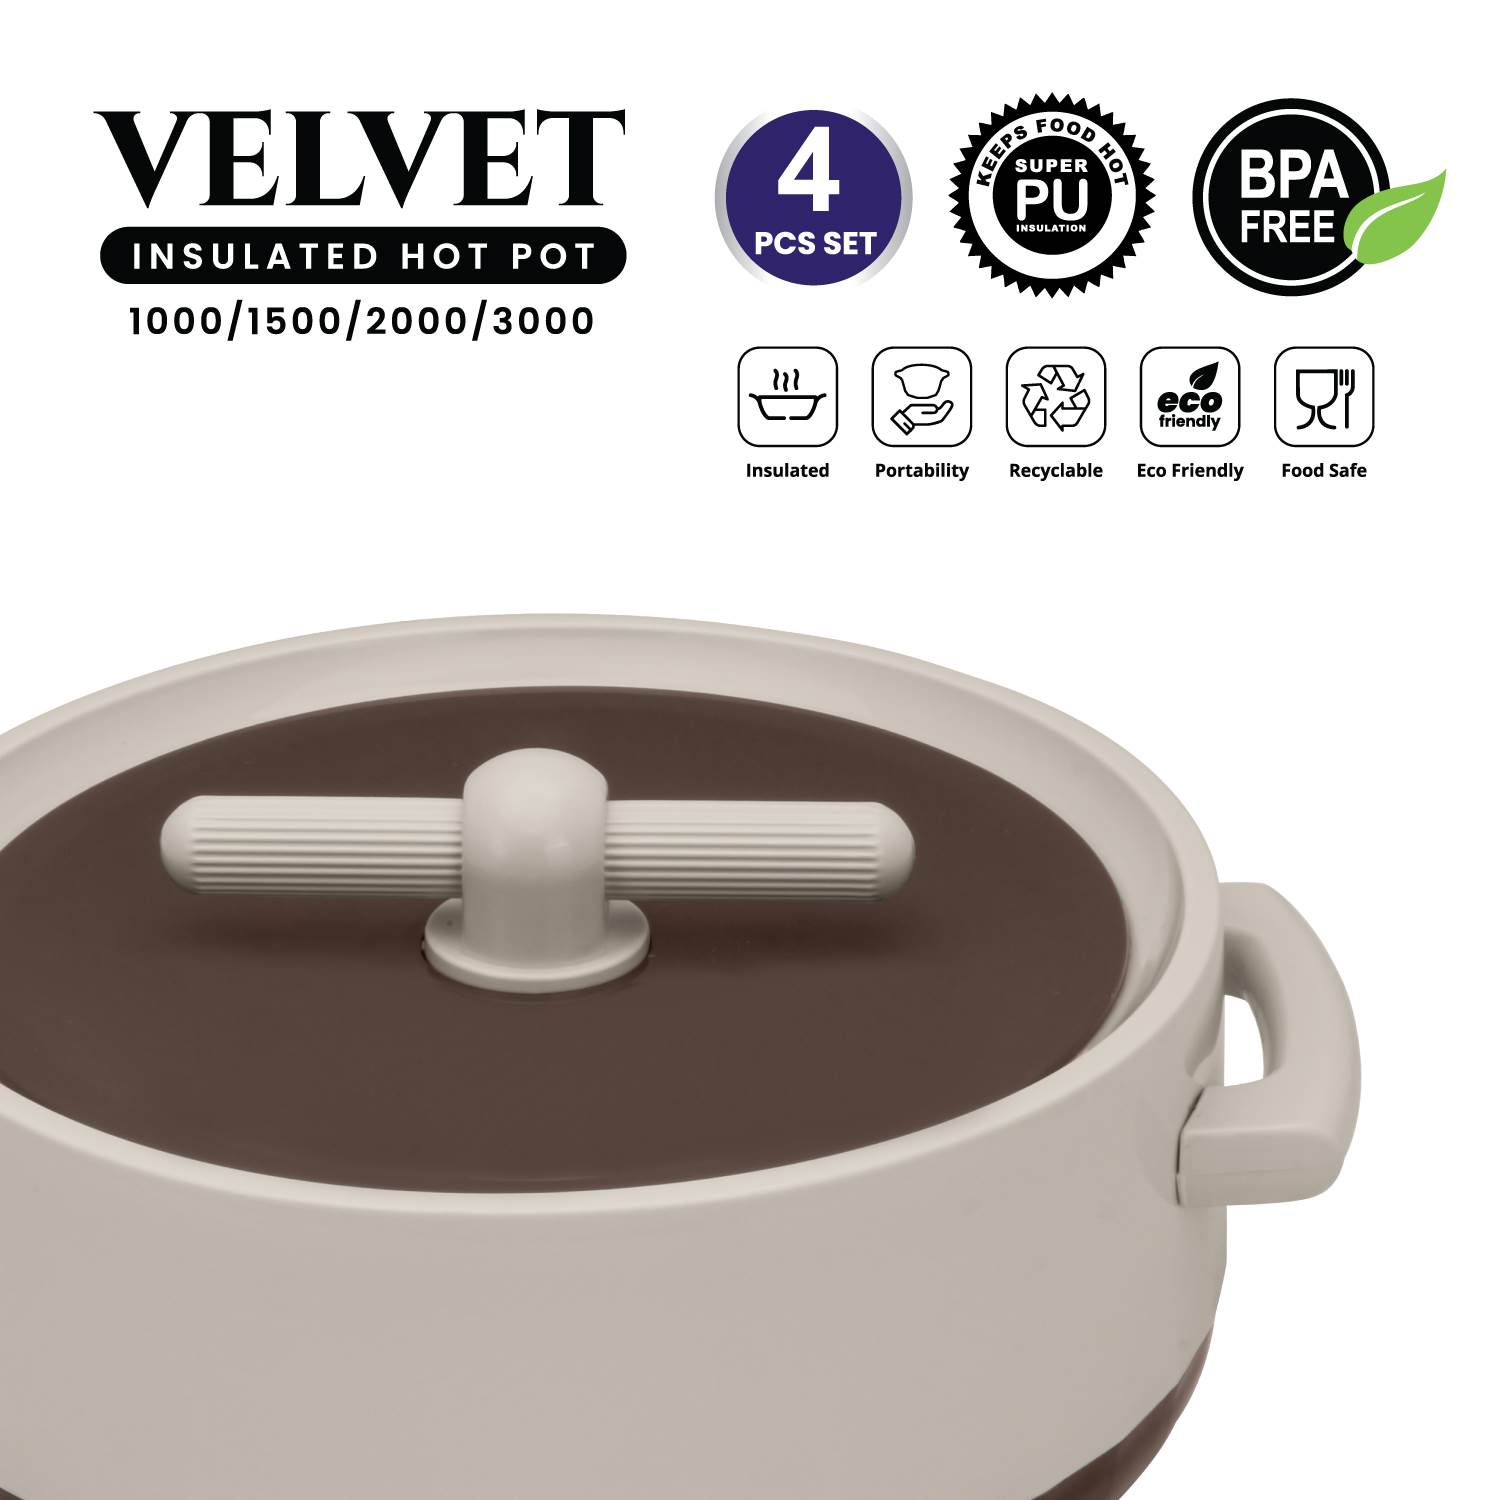 Selvel Velvet 4 Pc Set (1000/1500/2000/3000) - BROWN